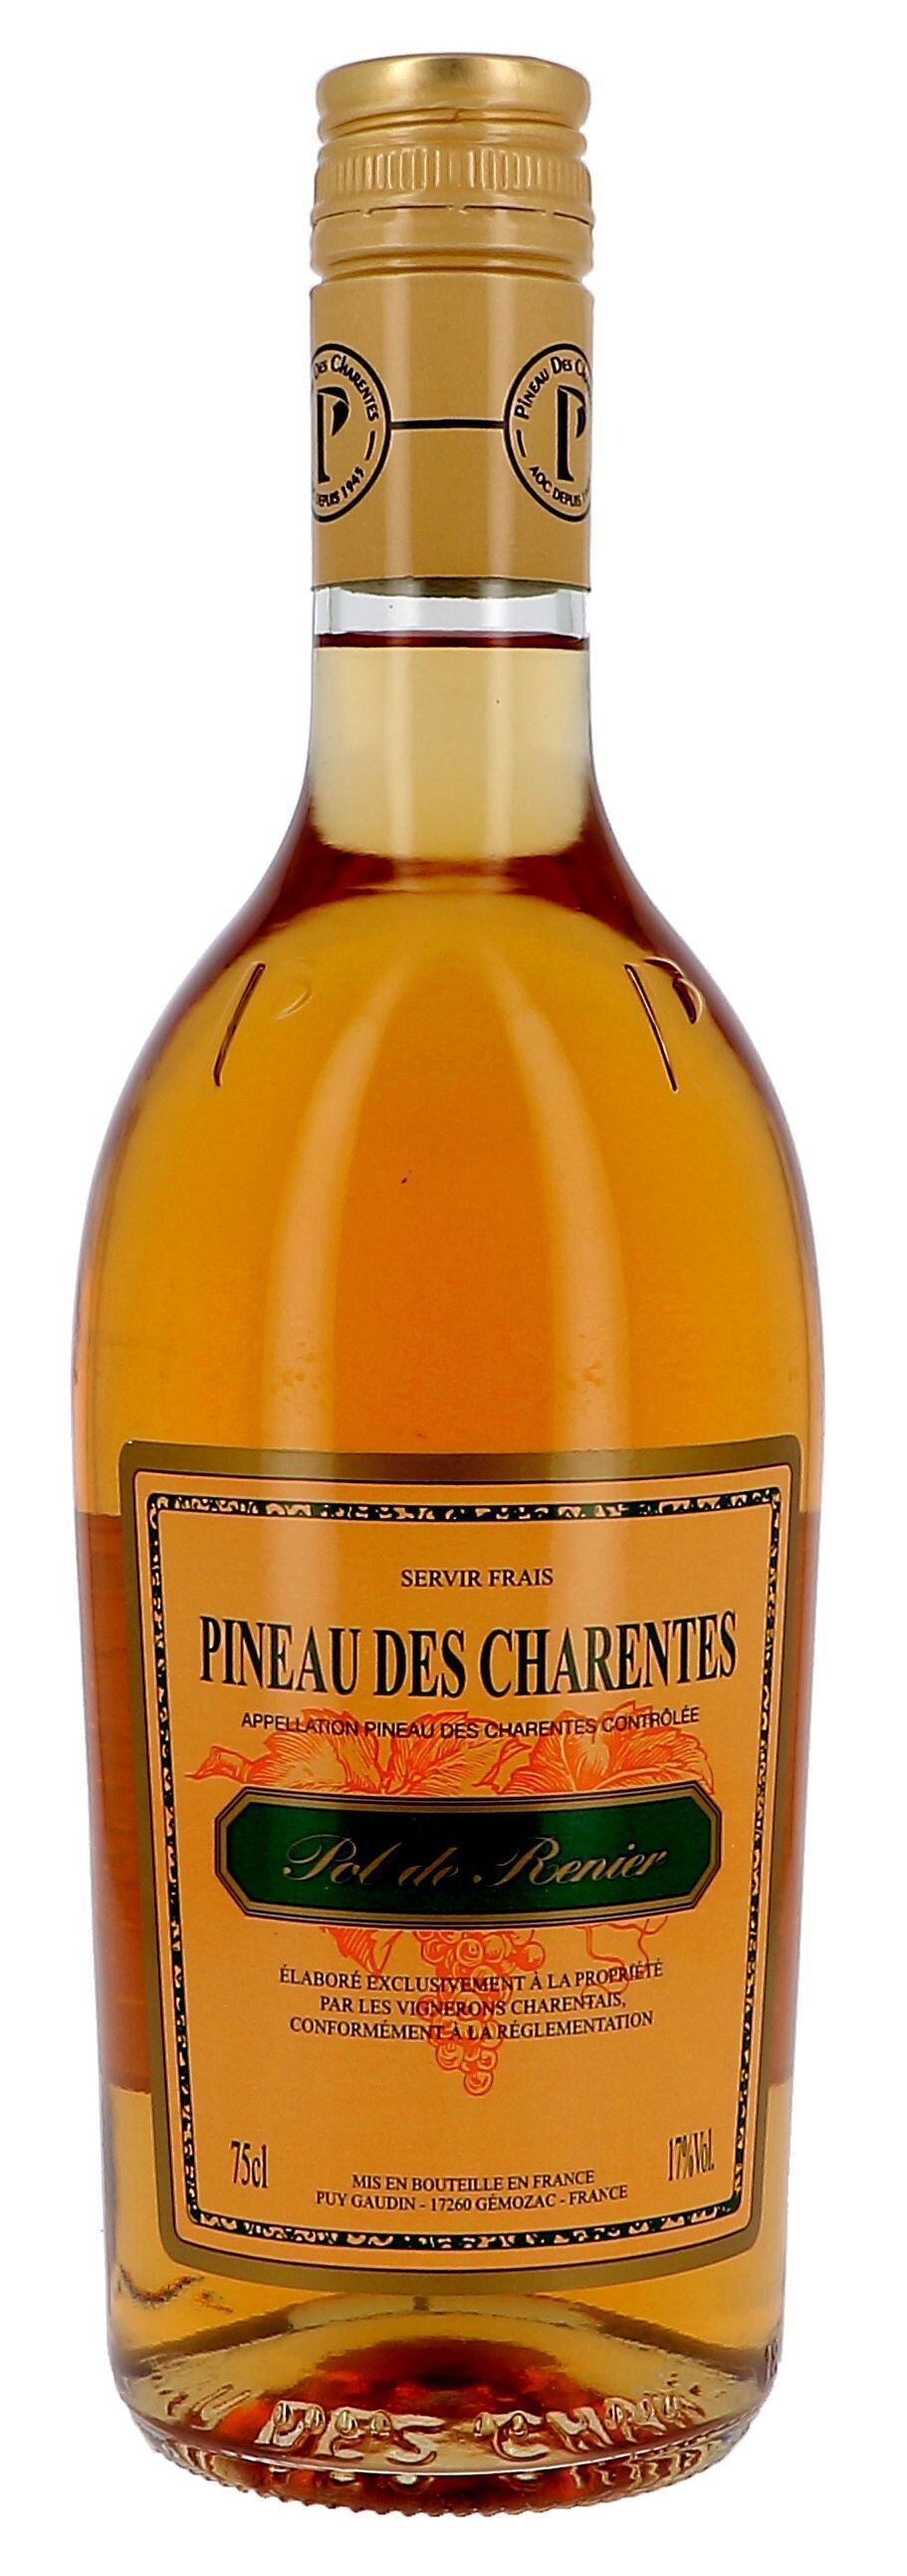 Pineau des Charentes Pol Renier wit 75cl 17% (Pineau de charentes)